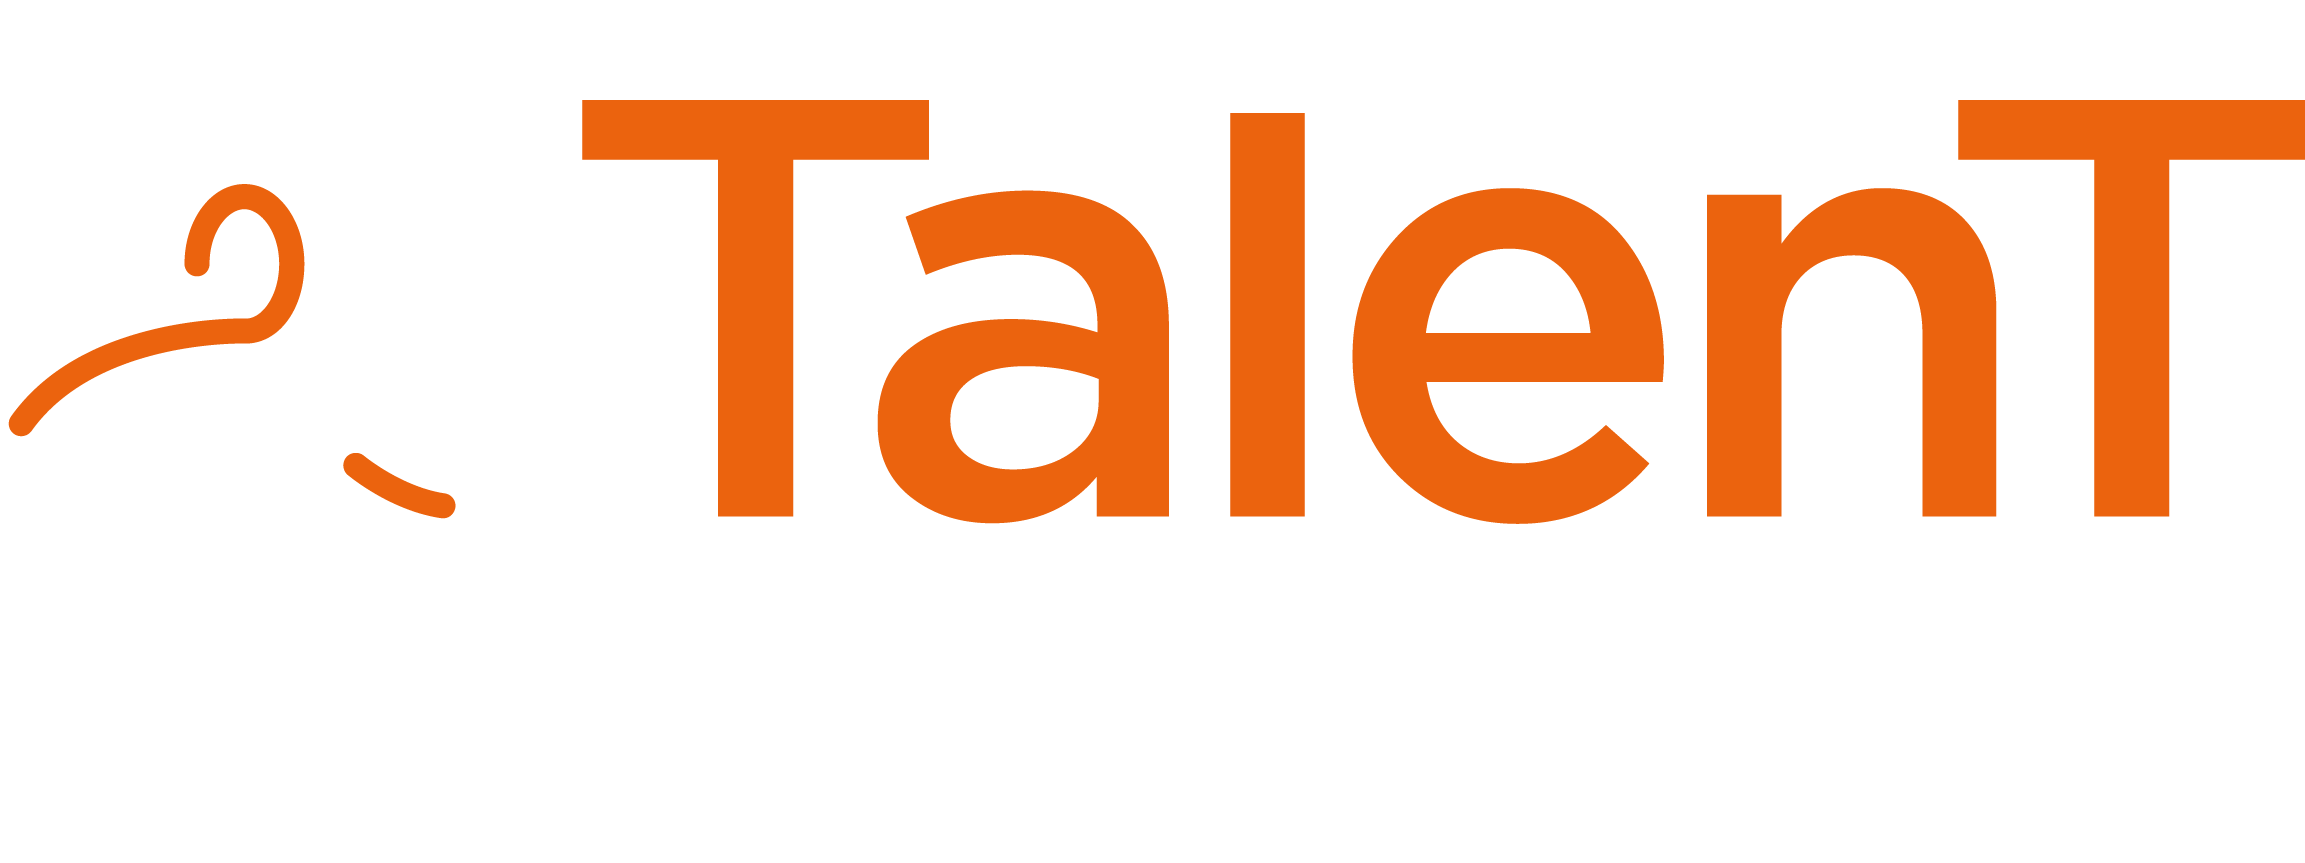 Ideandum Talent - Logo orizzontale corto arancione 4